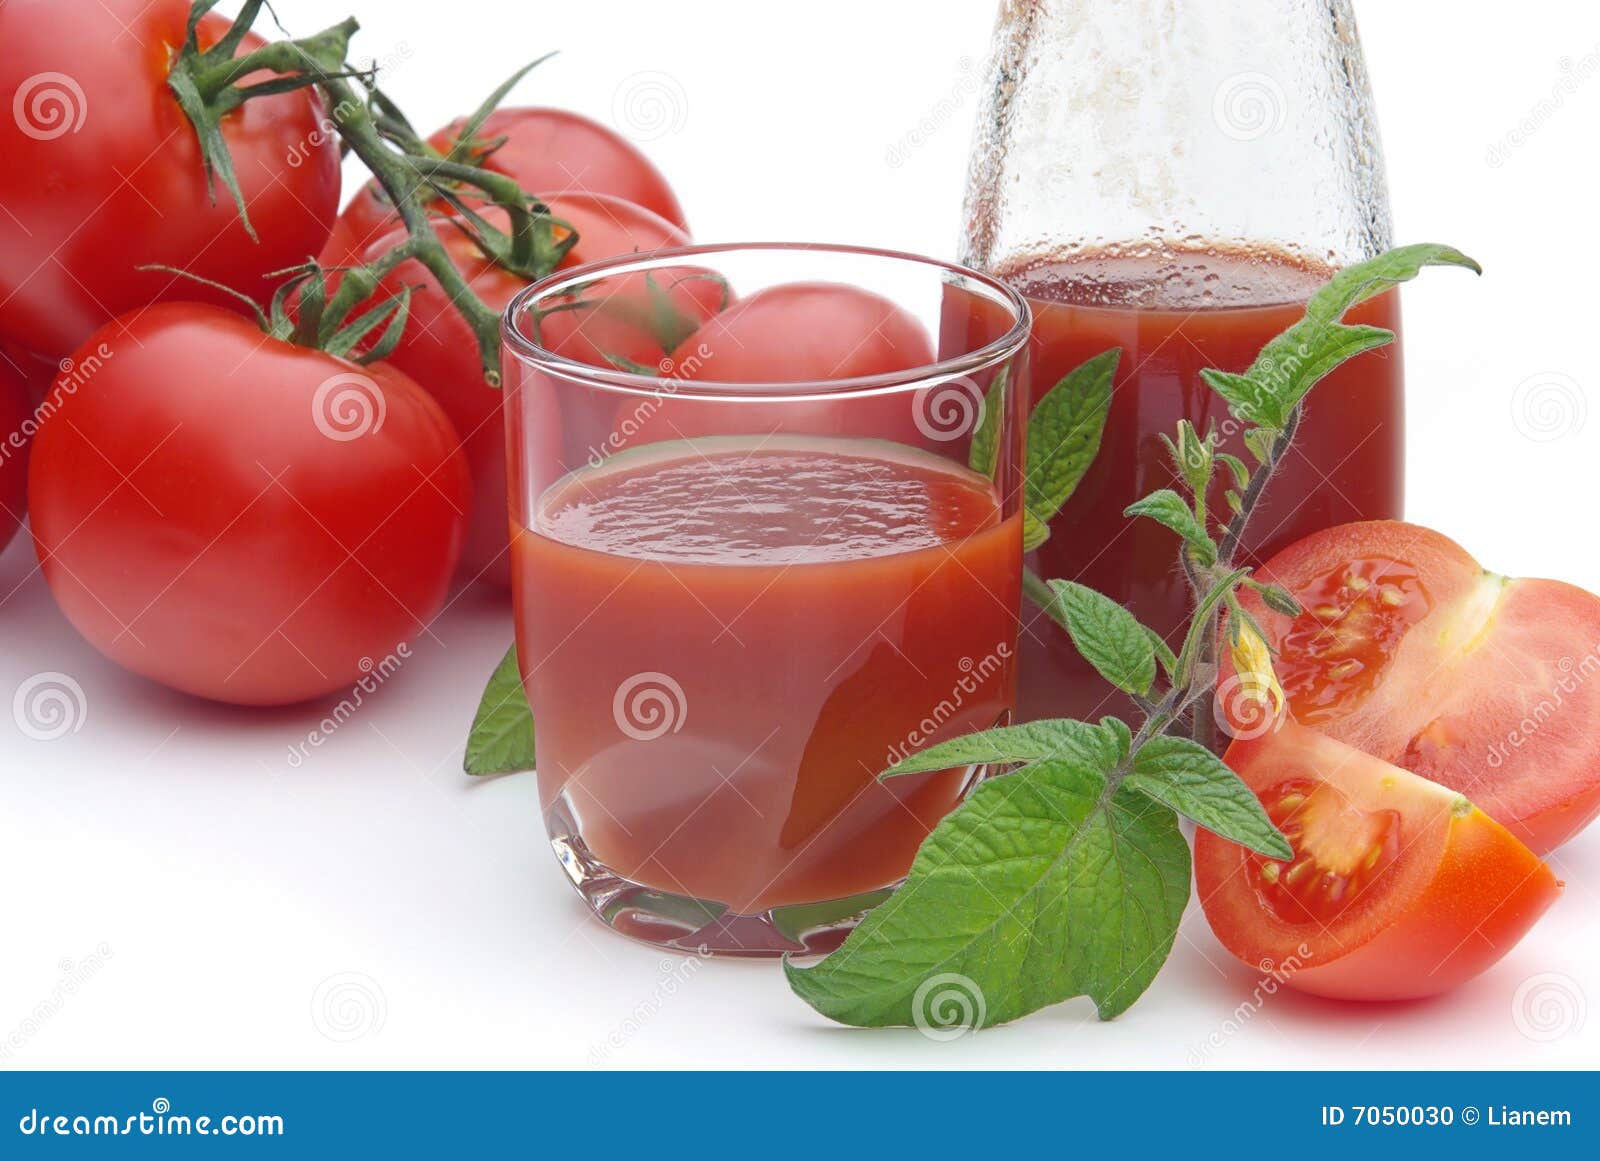 番茄汁图片素材-编号35441786-图行天下